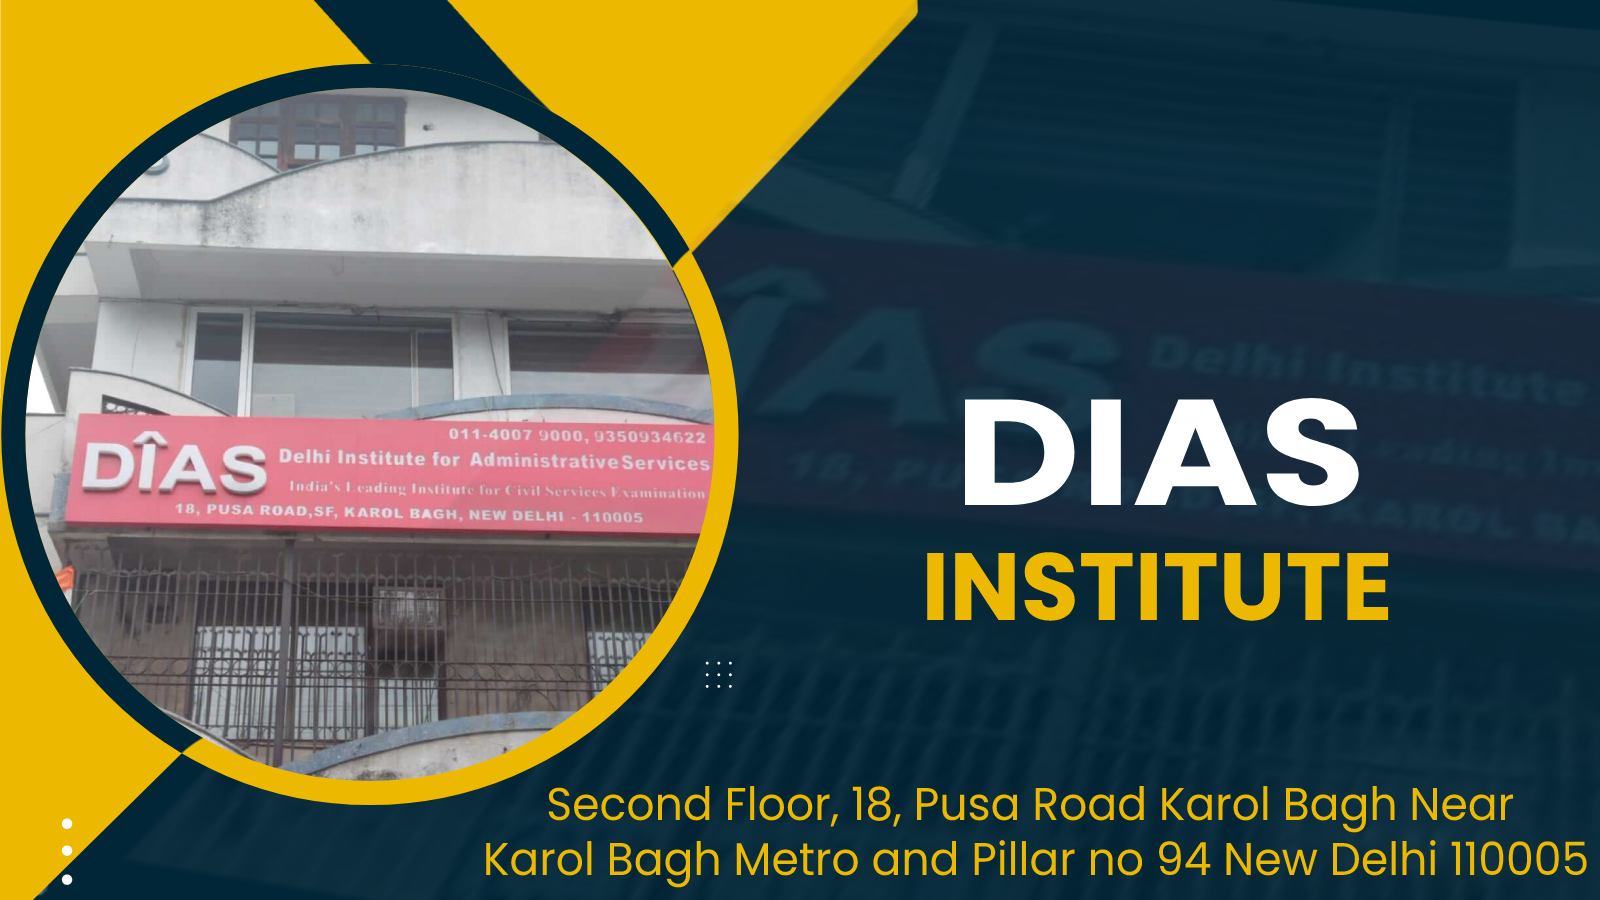 DIAS Academy Delhi